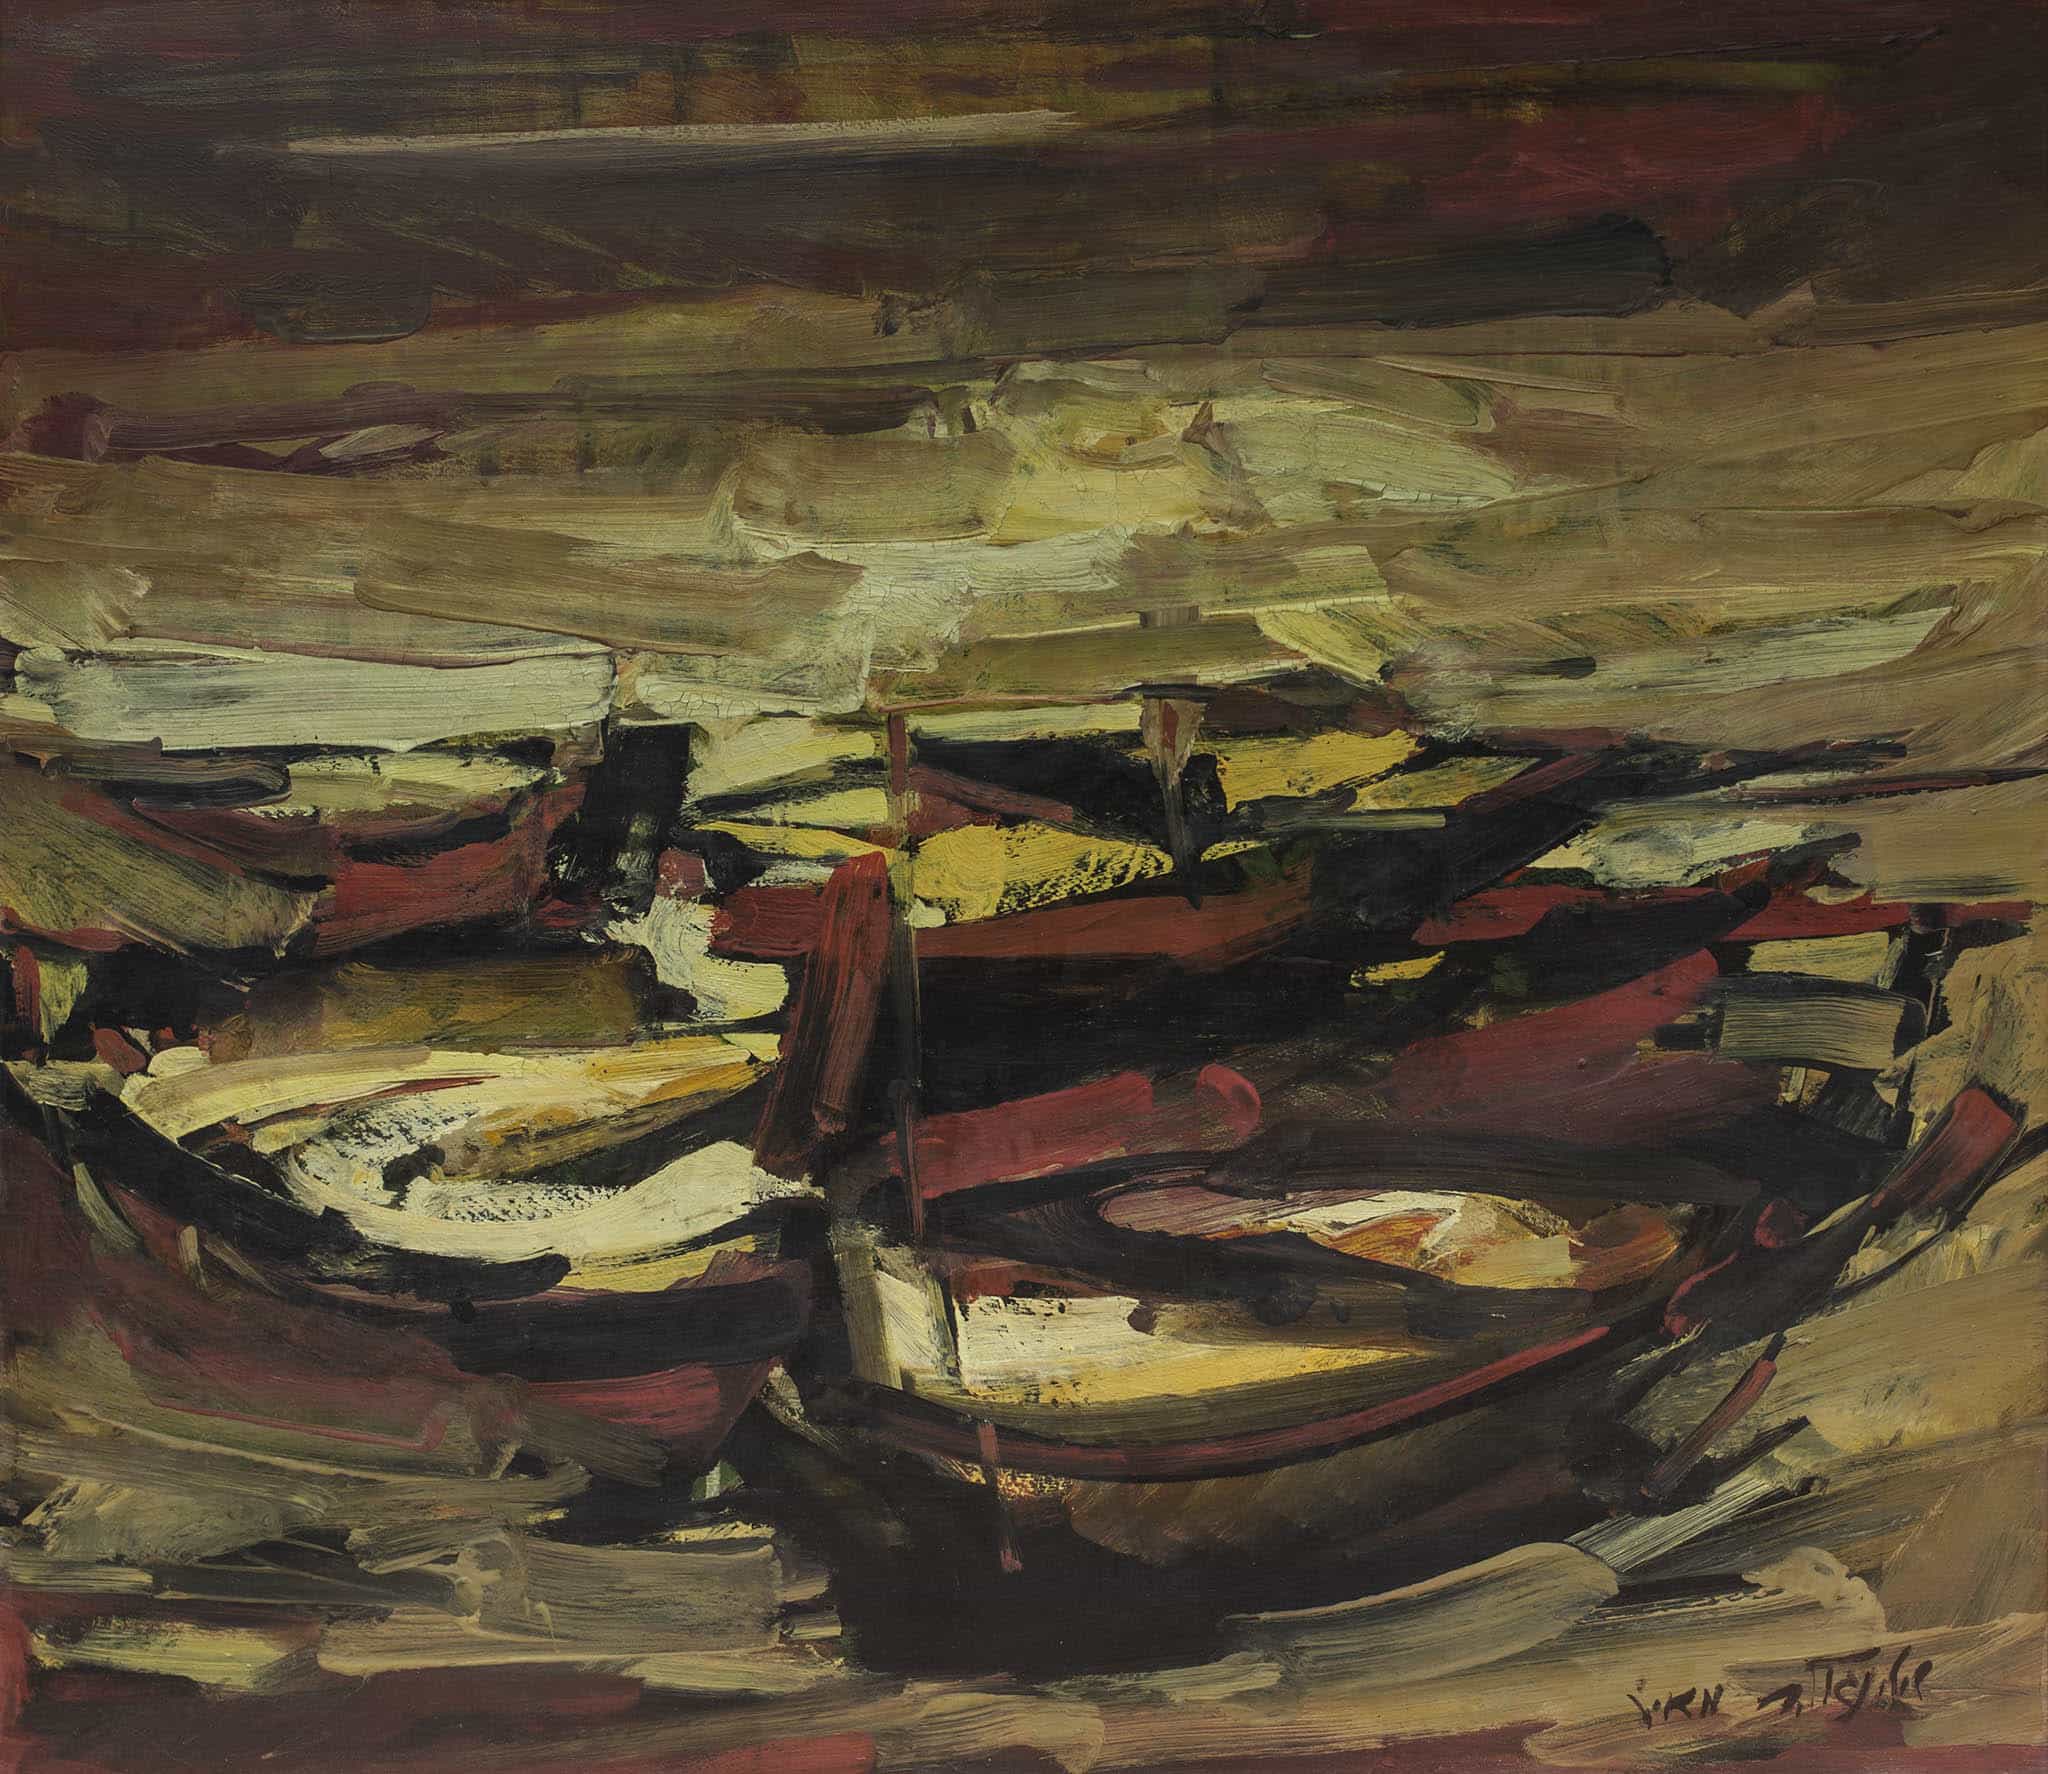 מאיר שטיינגולד, "סירות", שמן על בד, 75x65 ס"מ